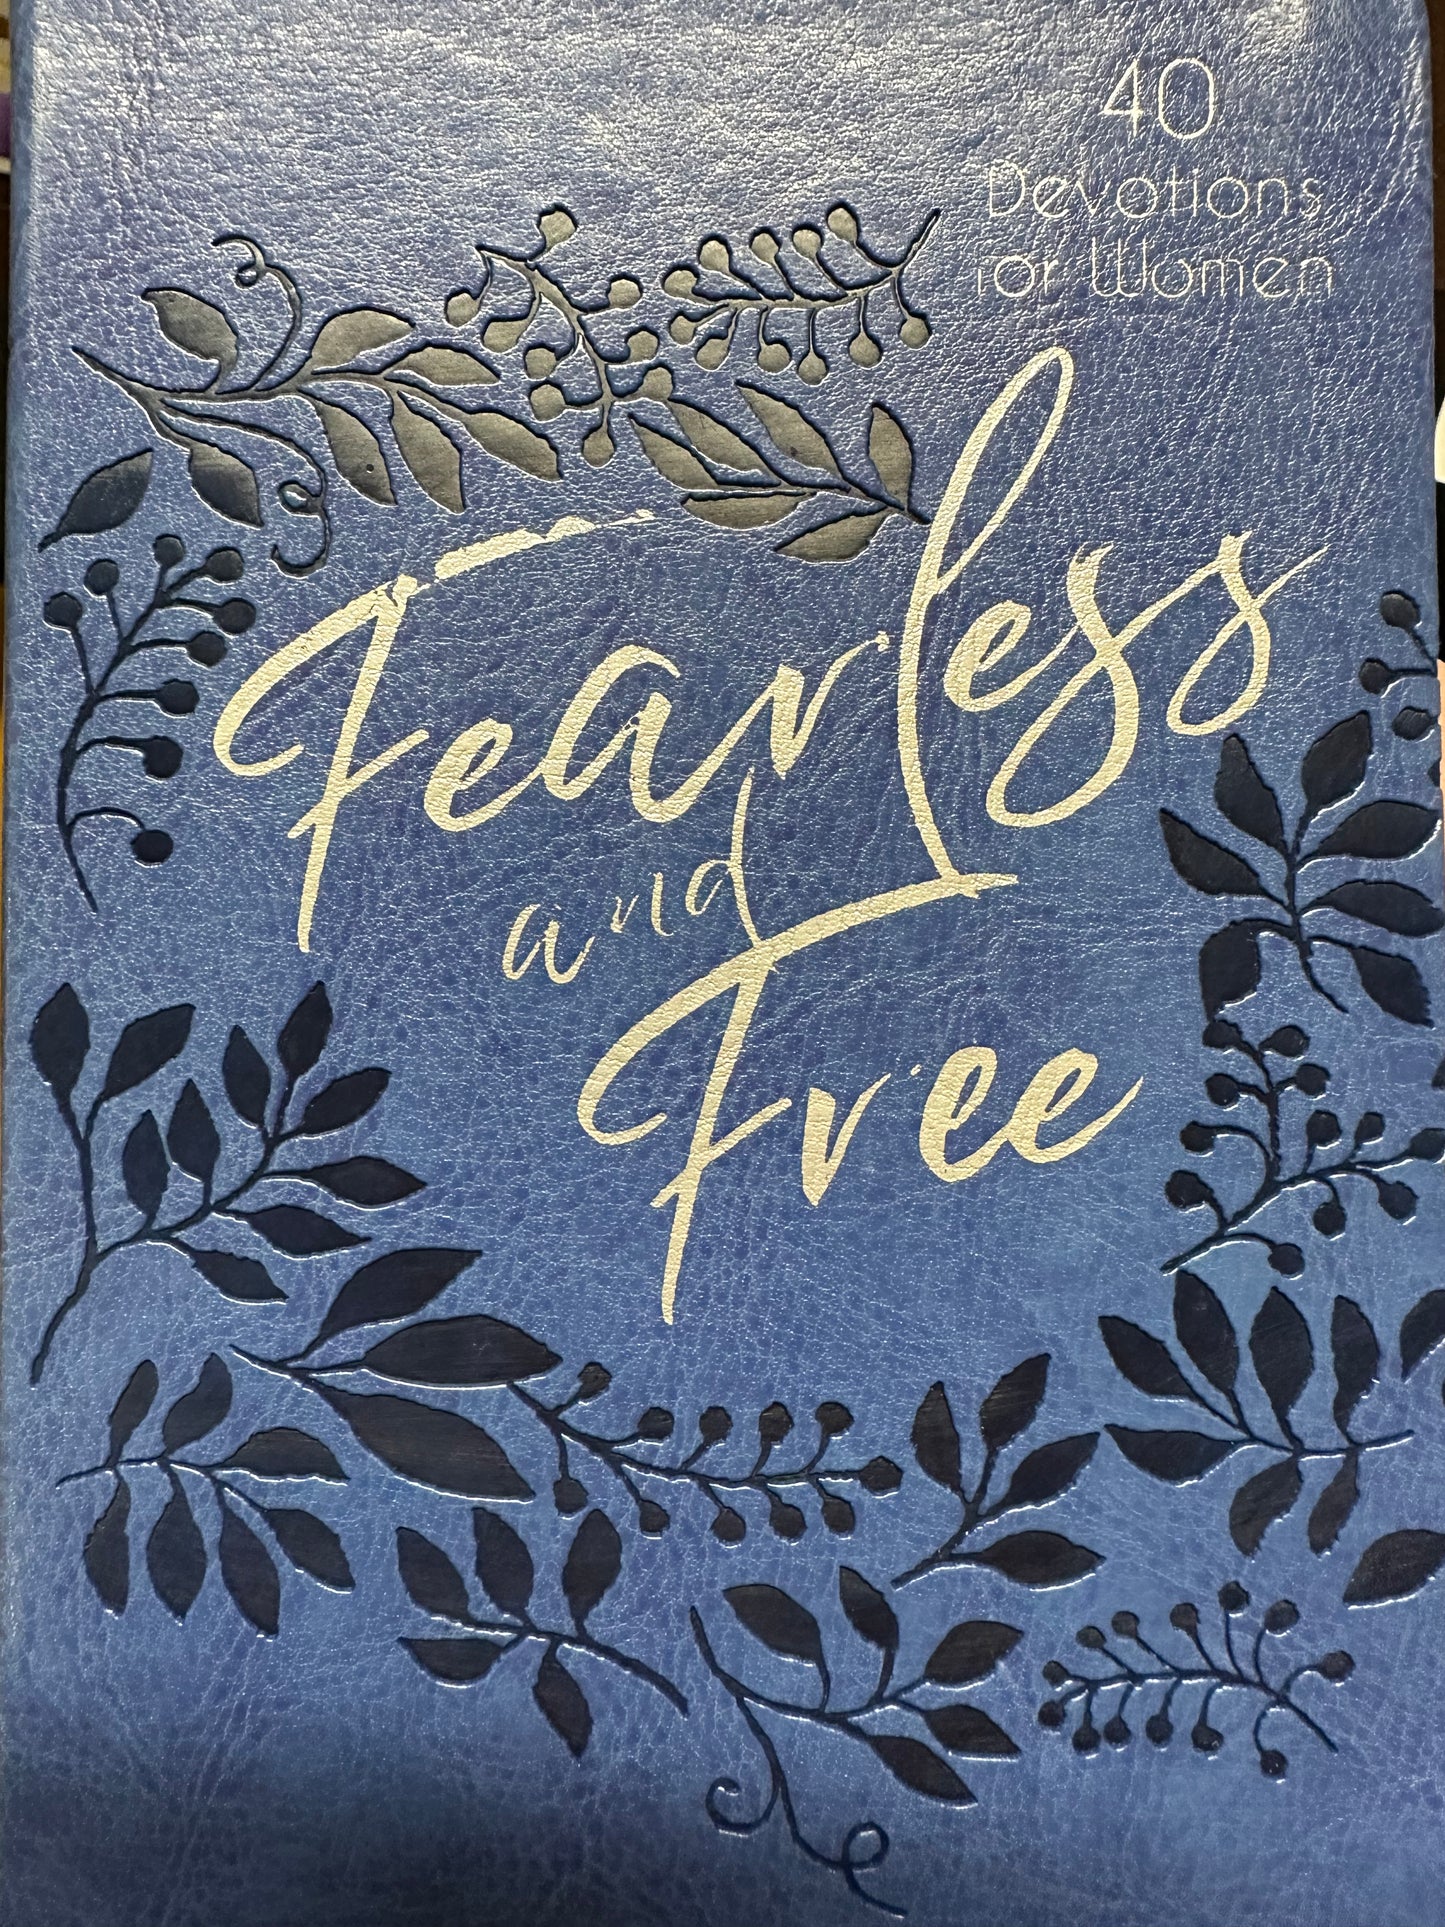 Fearless & Free 40 Devotions for Women